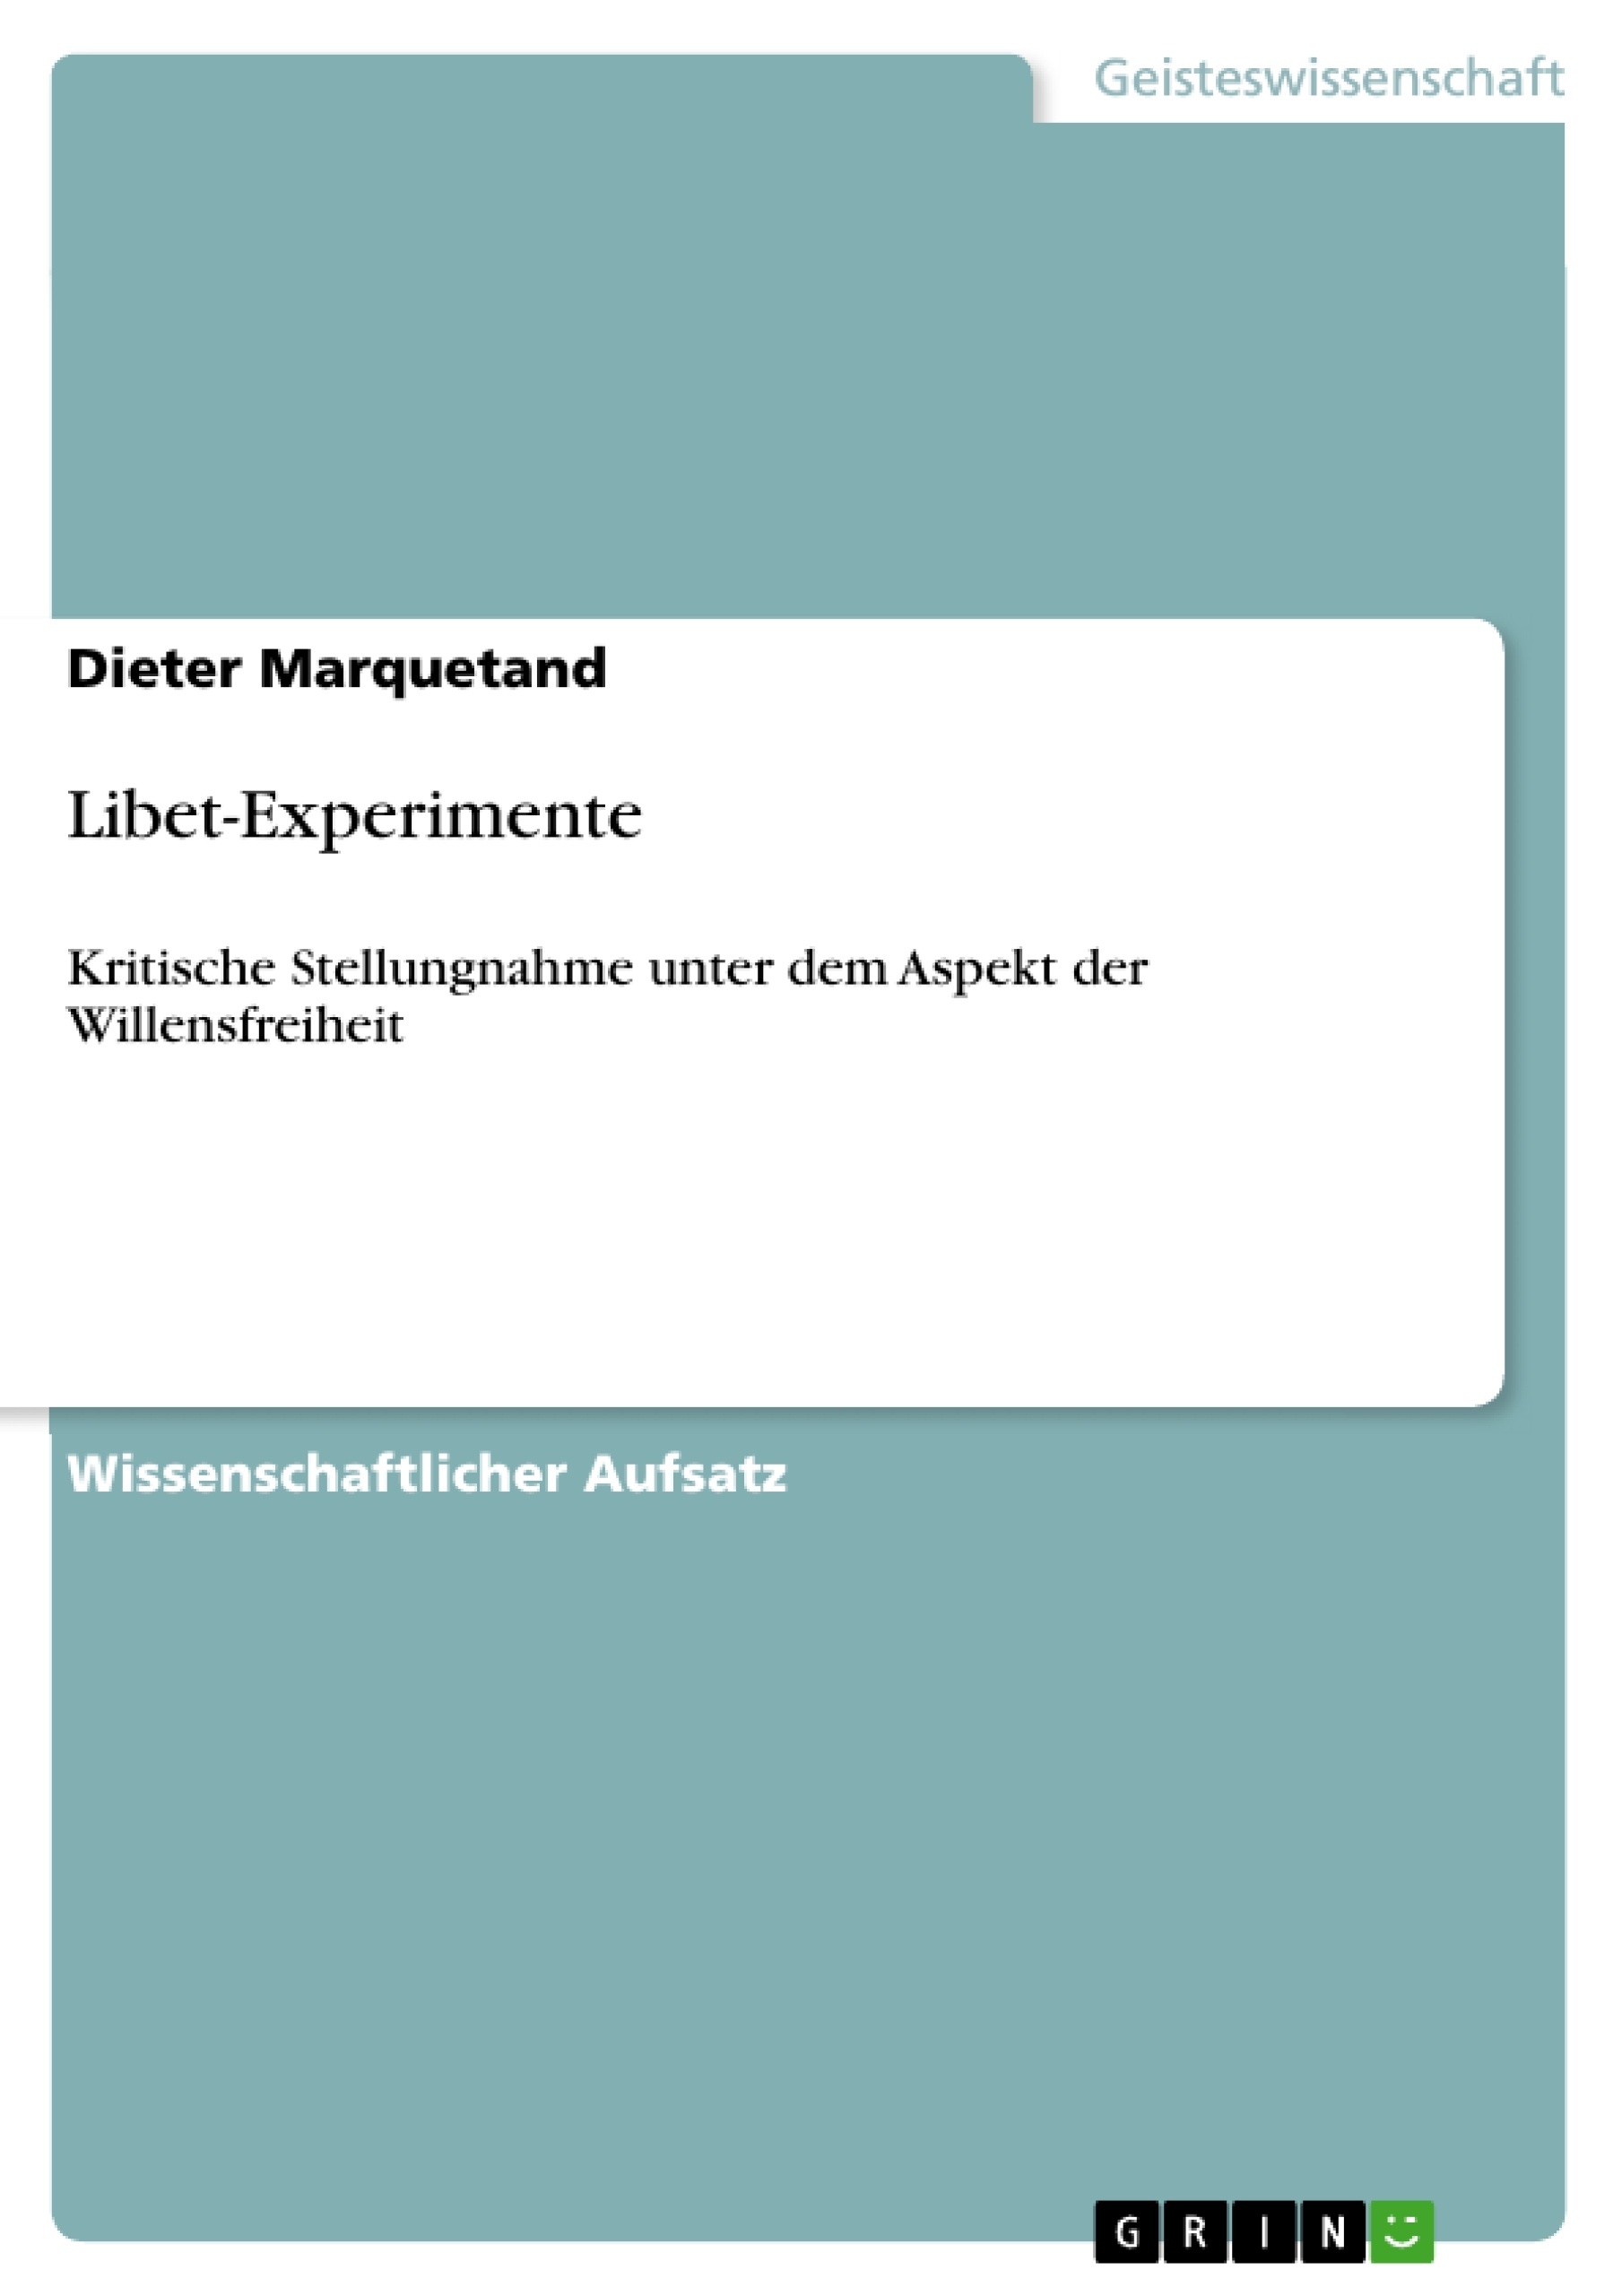 Título: Libet-Experimente 